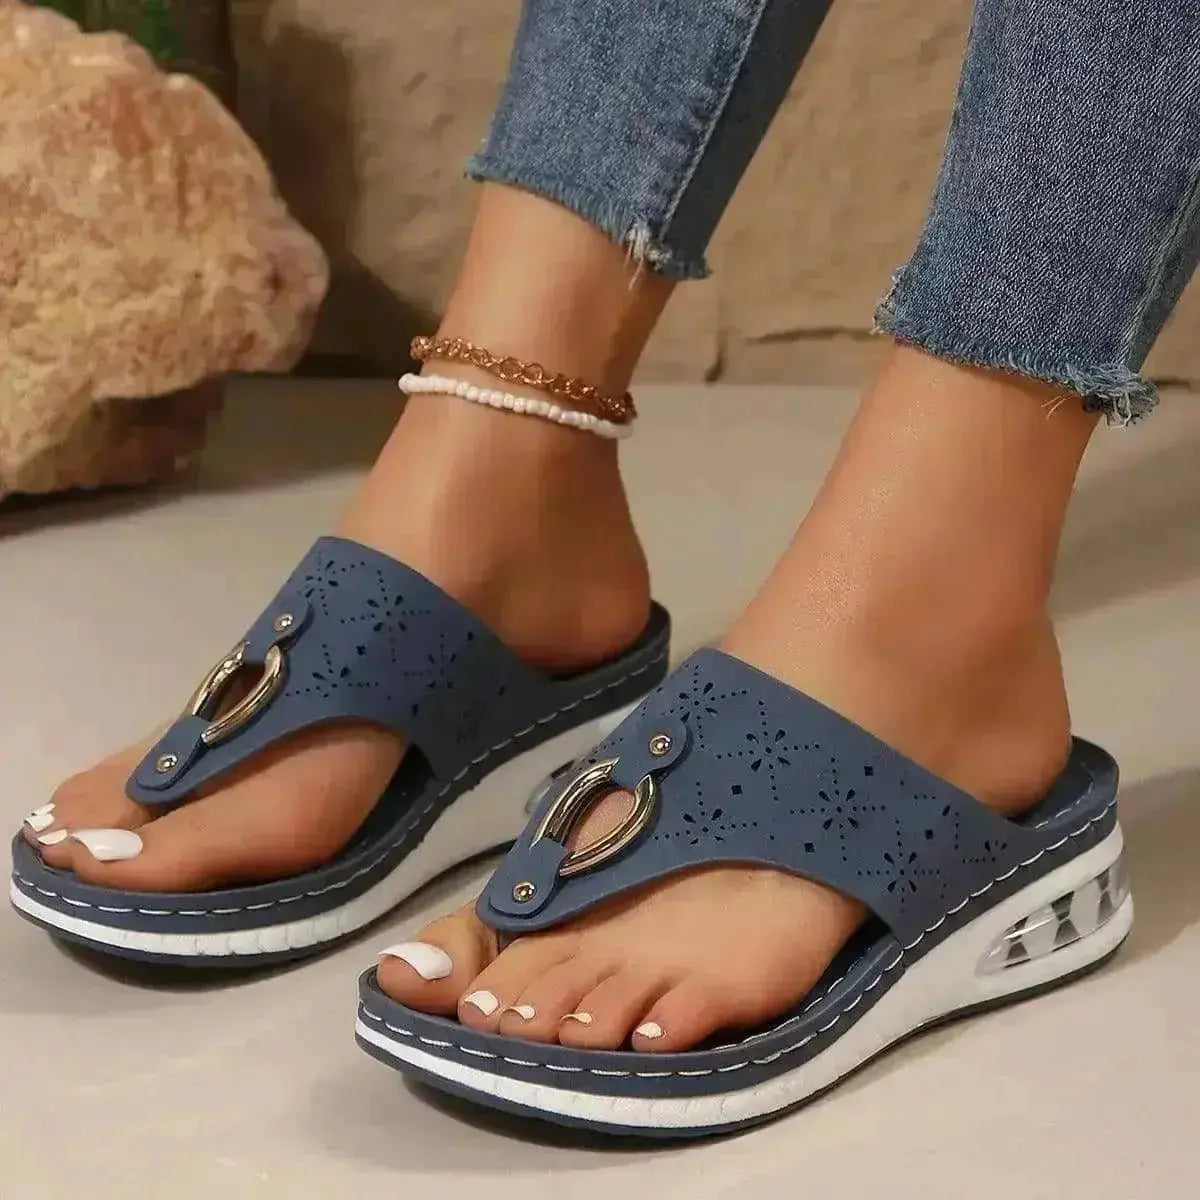 New Air Cushion Thong Sandals